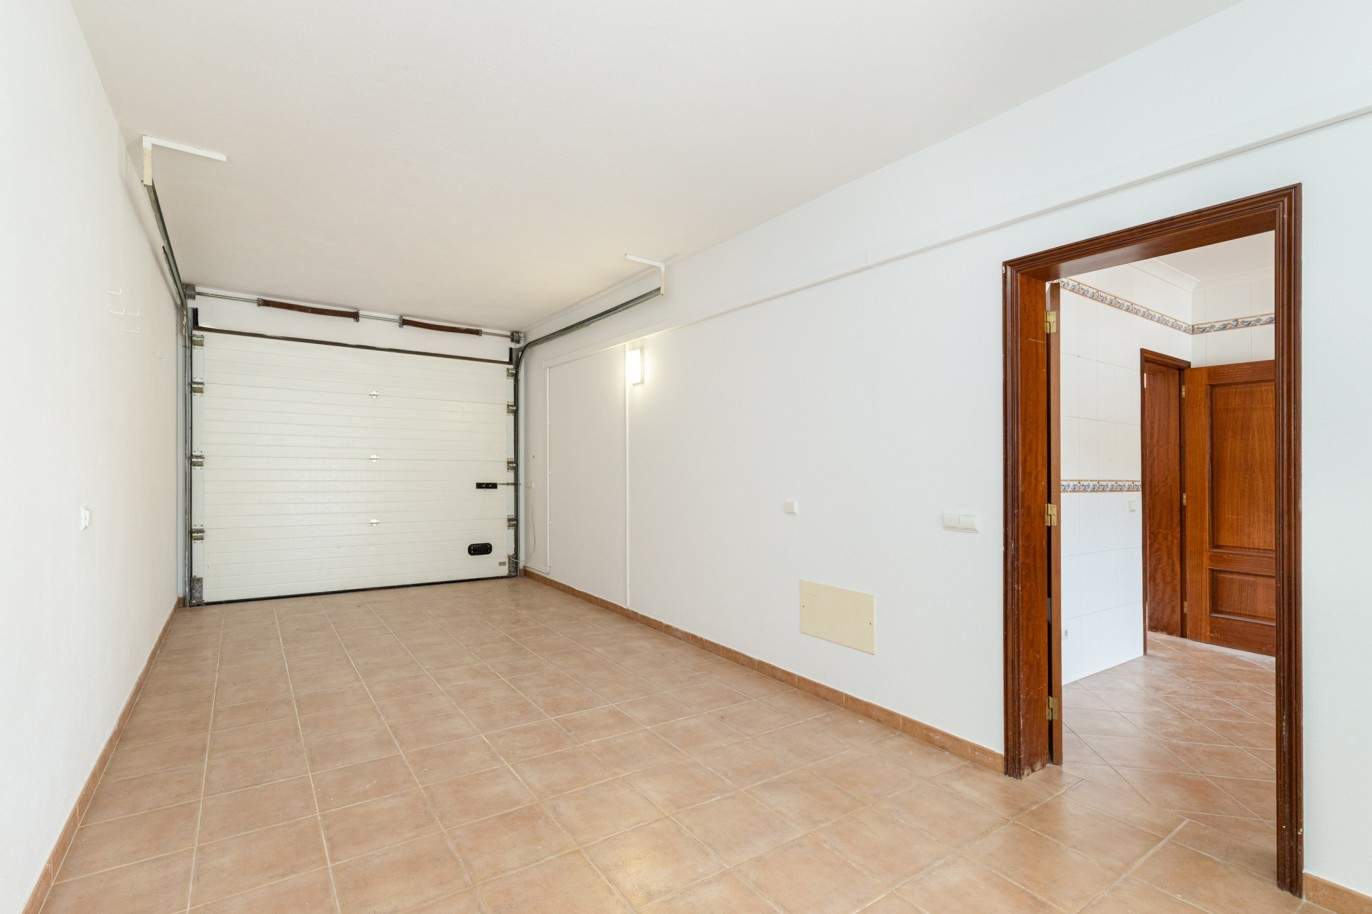 Villa de 3 dormitorios en venta en Porto de Mós, Lagos, Algarve_201781